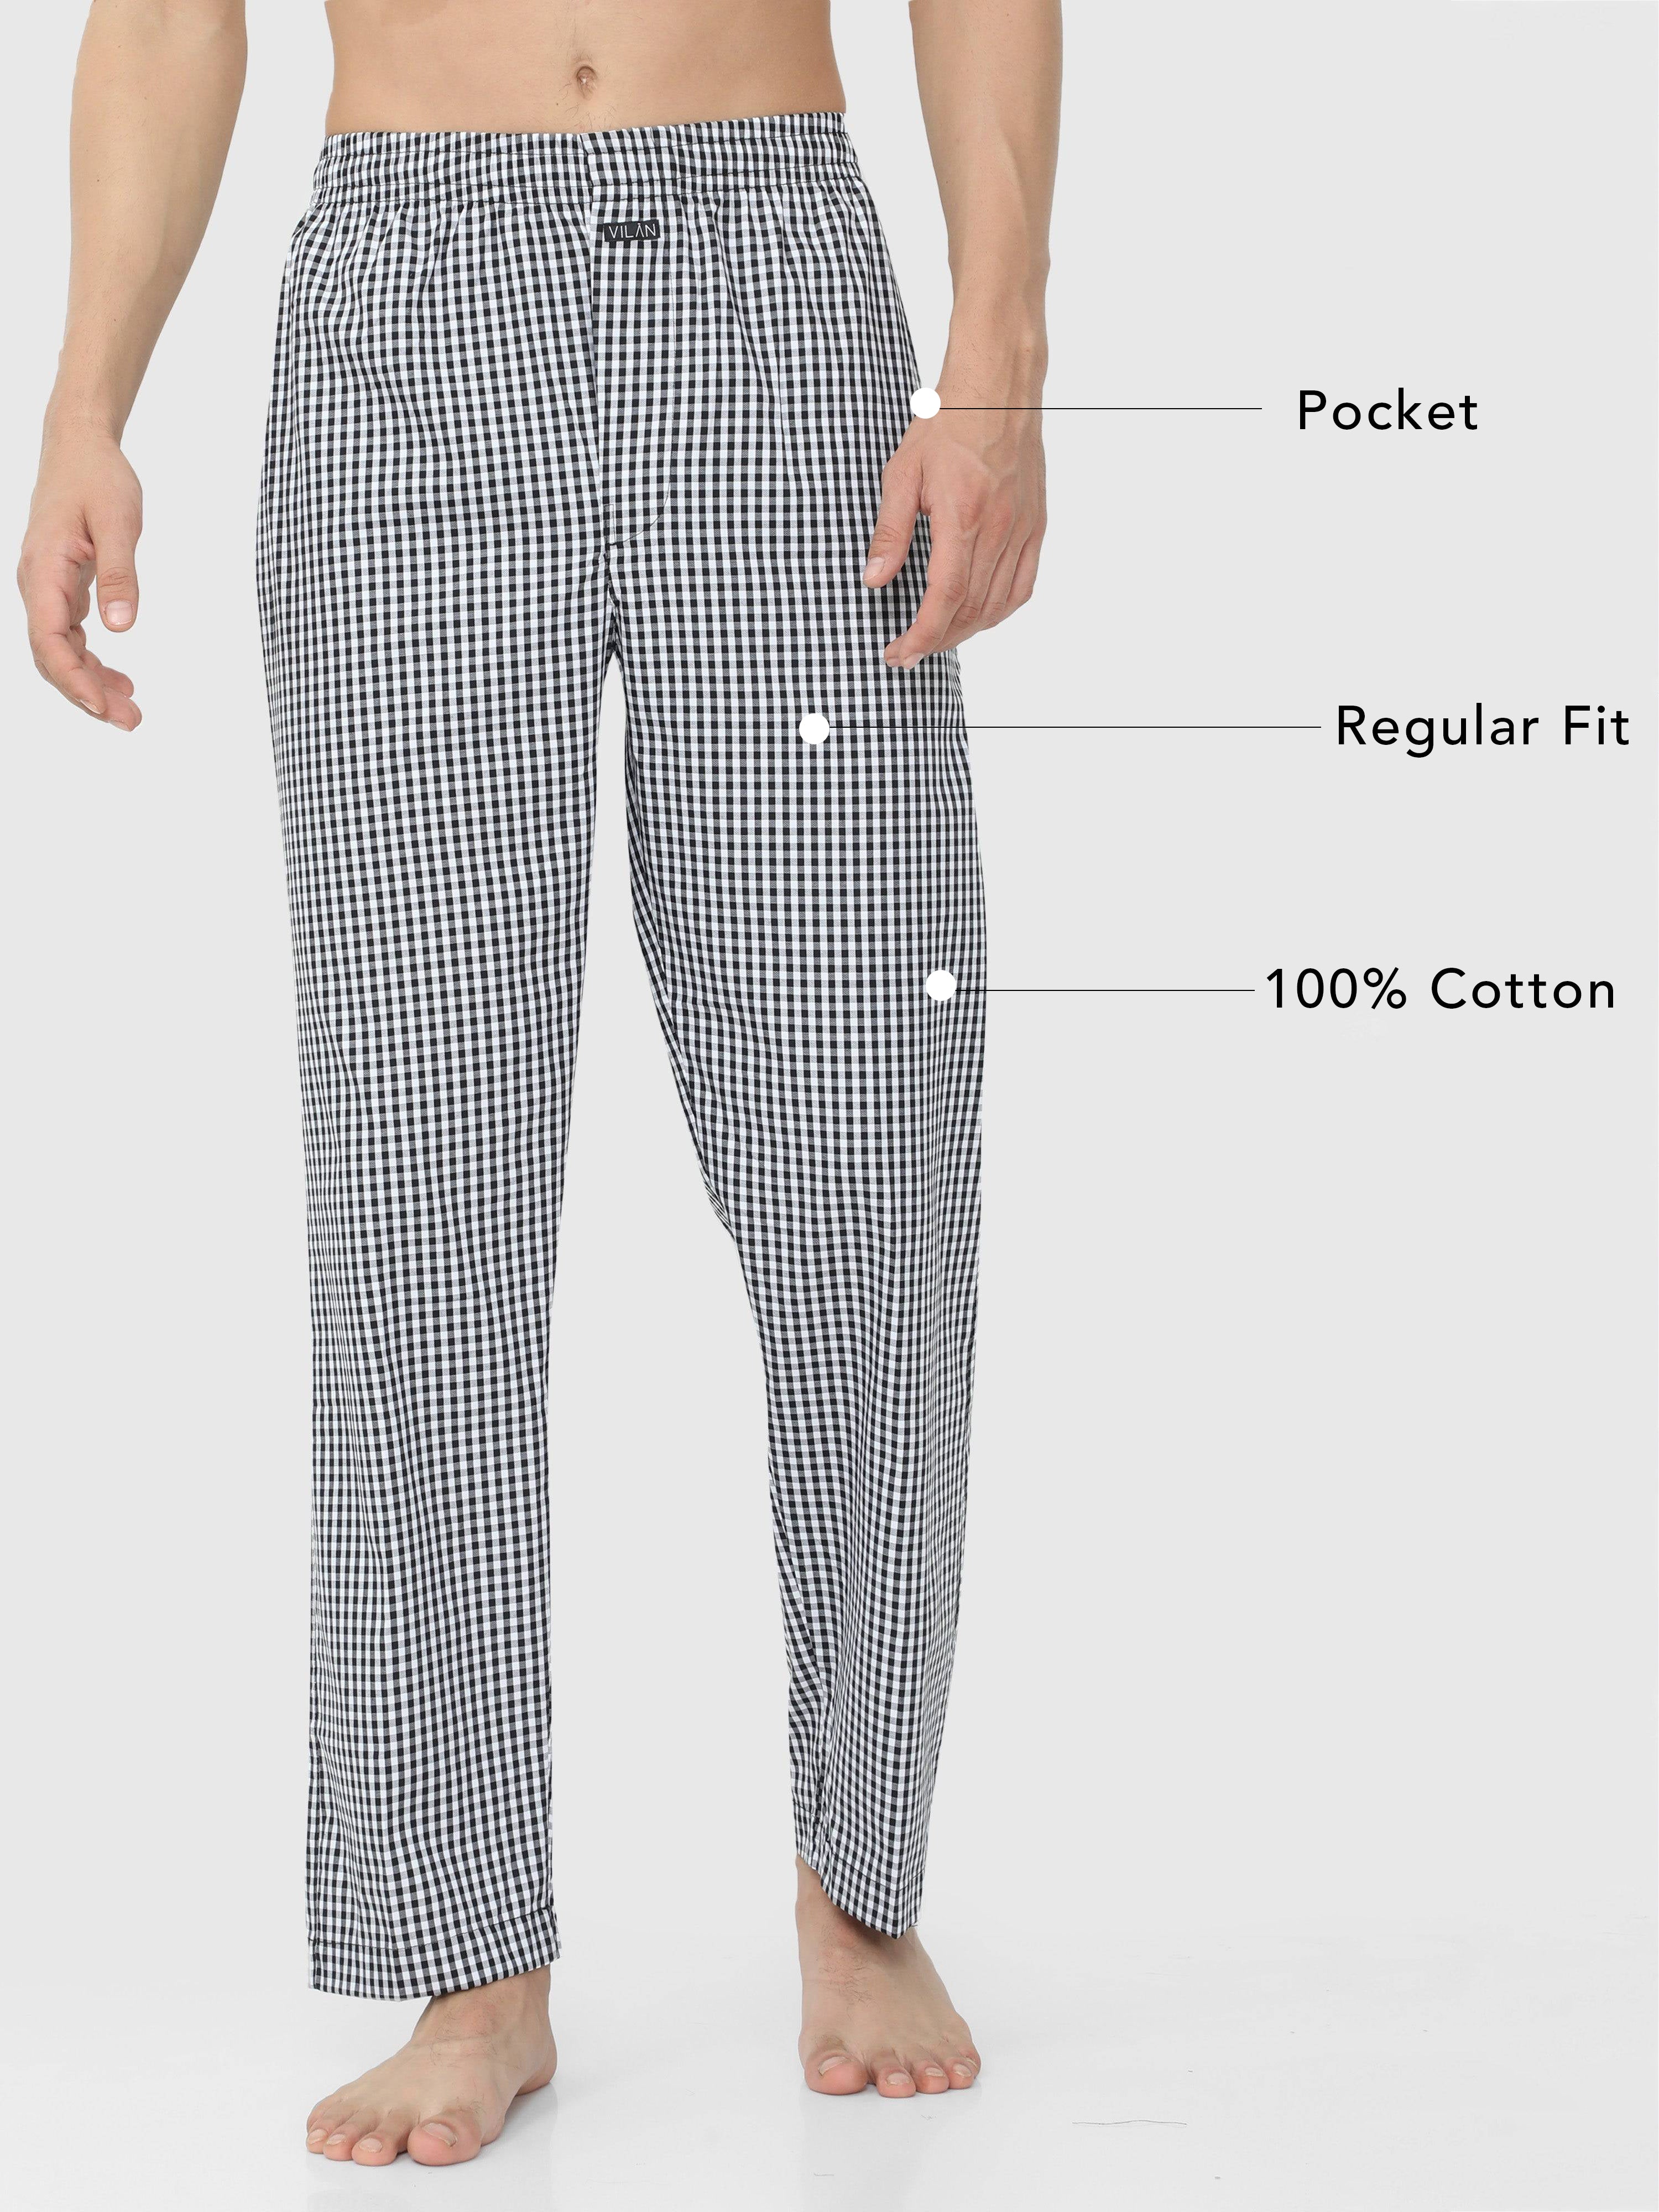 RENZER Mens Sleep Pajama Pants 100 Knit Cotton India  Ubuy